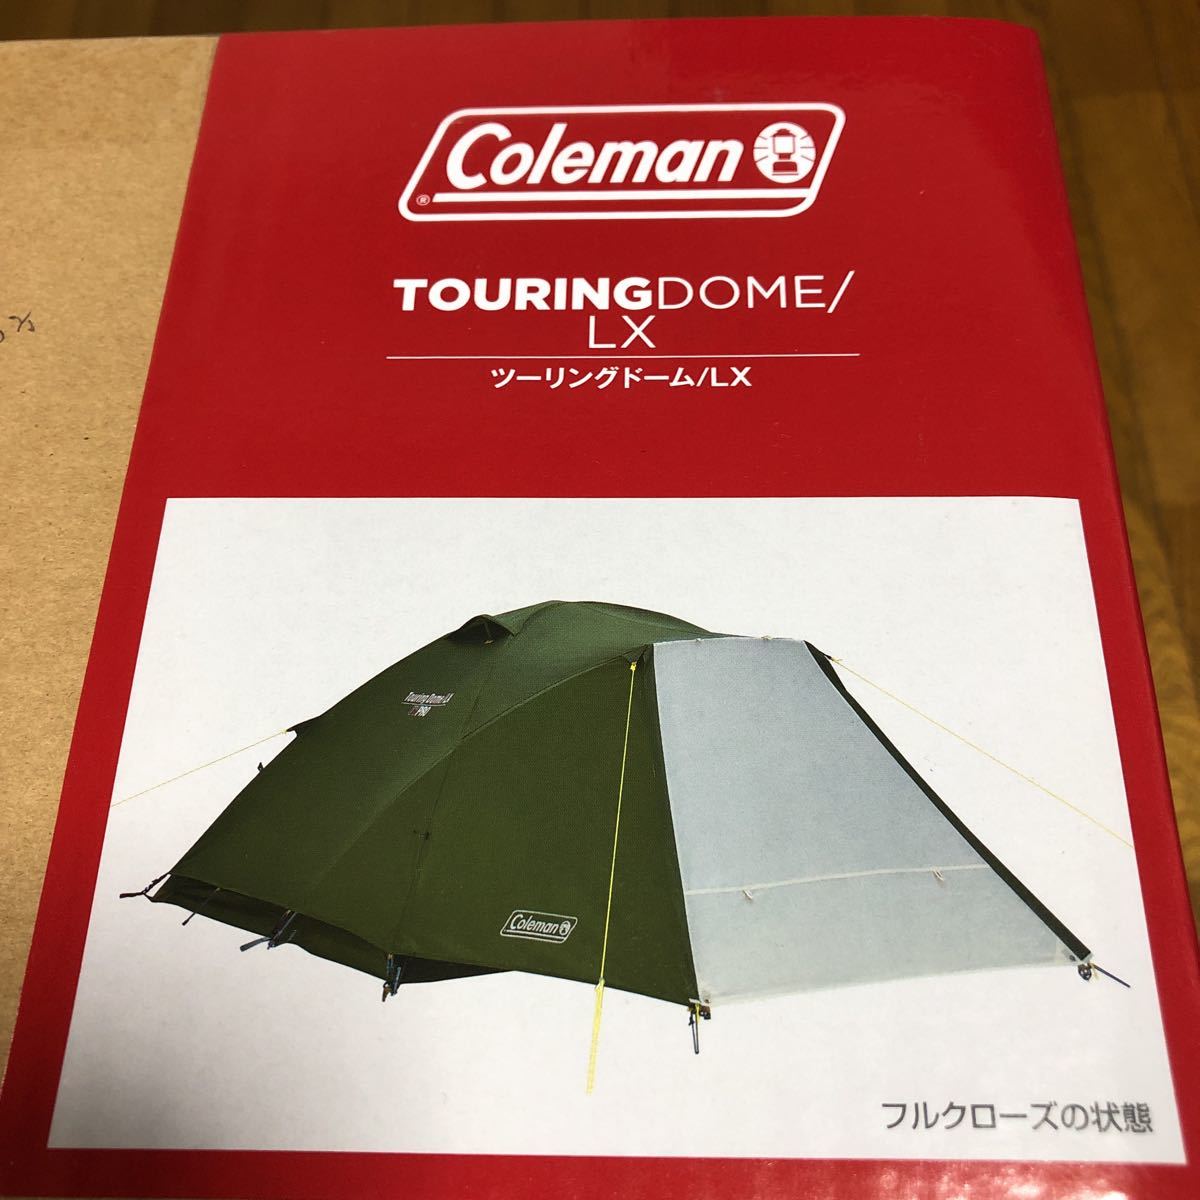 完売★新品 Coleman コールマン ツーリングドーム/LX 2〜3人用 キャンプ テント タープ 焚き火 snow peak